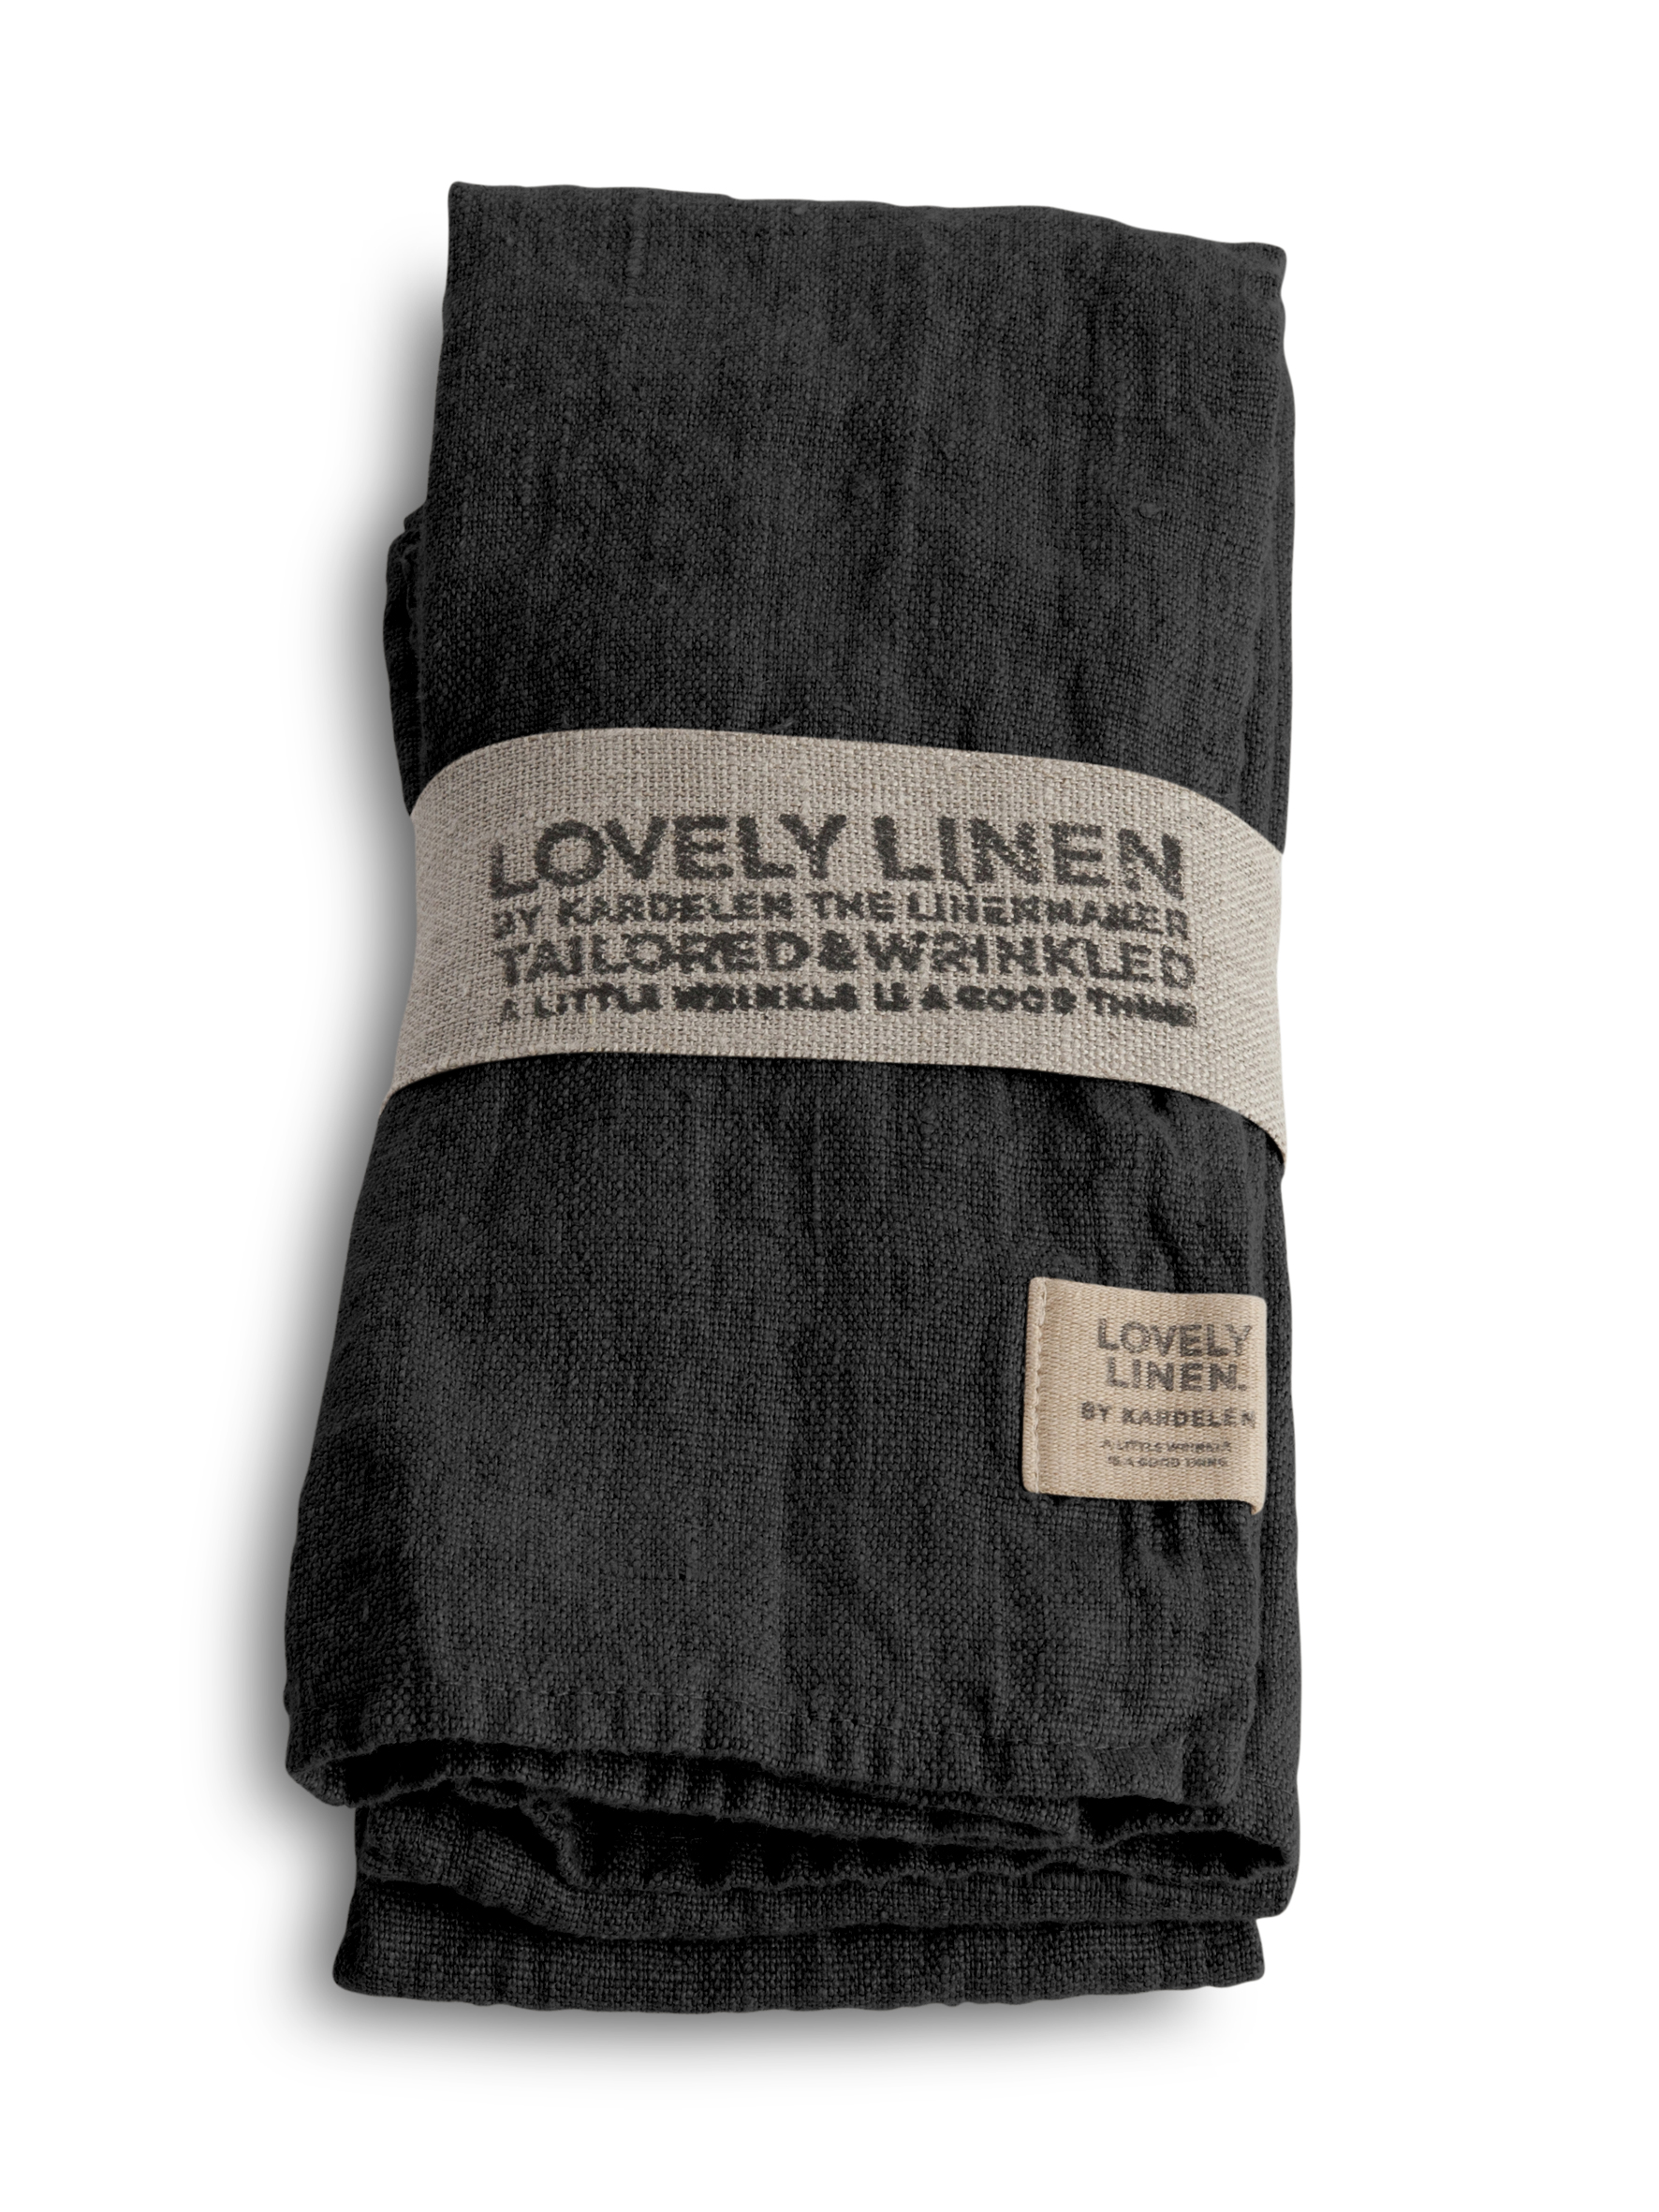 lovely-linen-100-european-linen-table-napkin-in-dark-grey